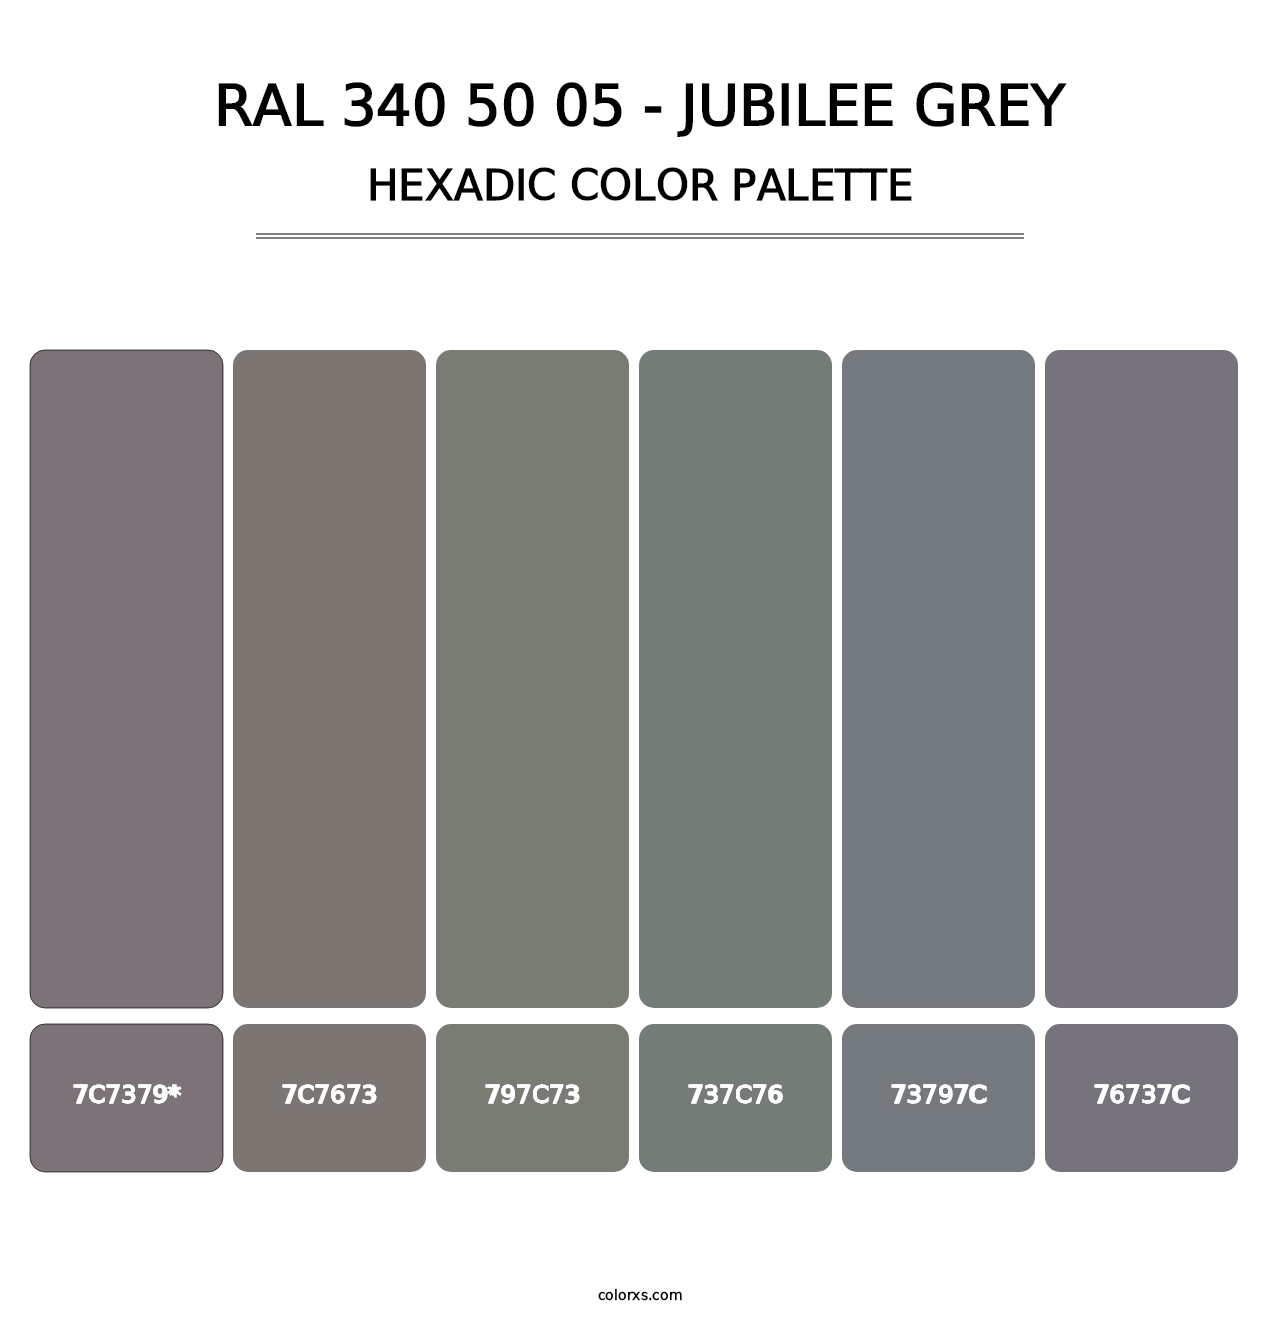 RAL 340 50 05 - Jubilee Grey - Hexadic Color Palette